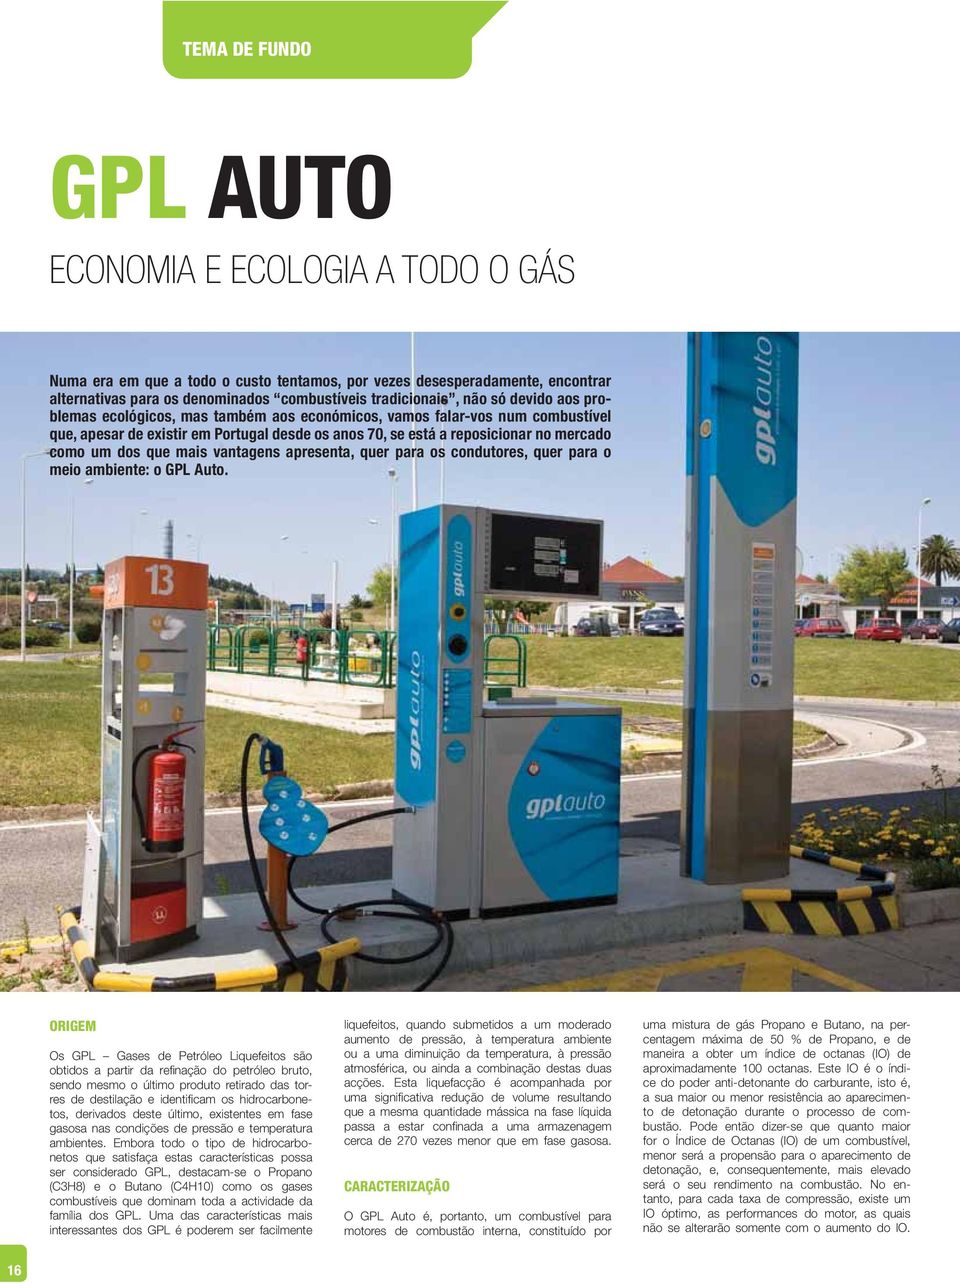 mais vantagens apresenta, quer para os condutores, quer para o meio ambiente: o GPL Auto.